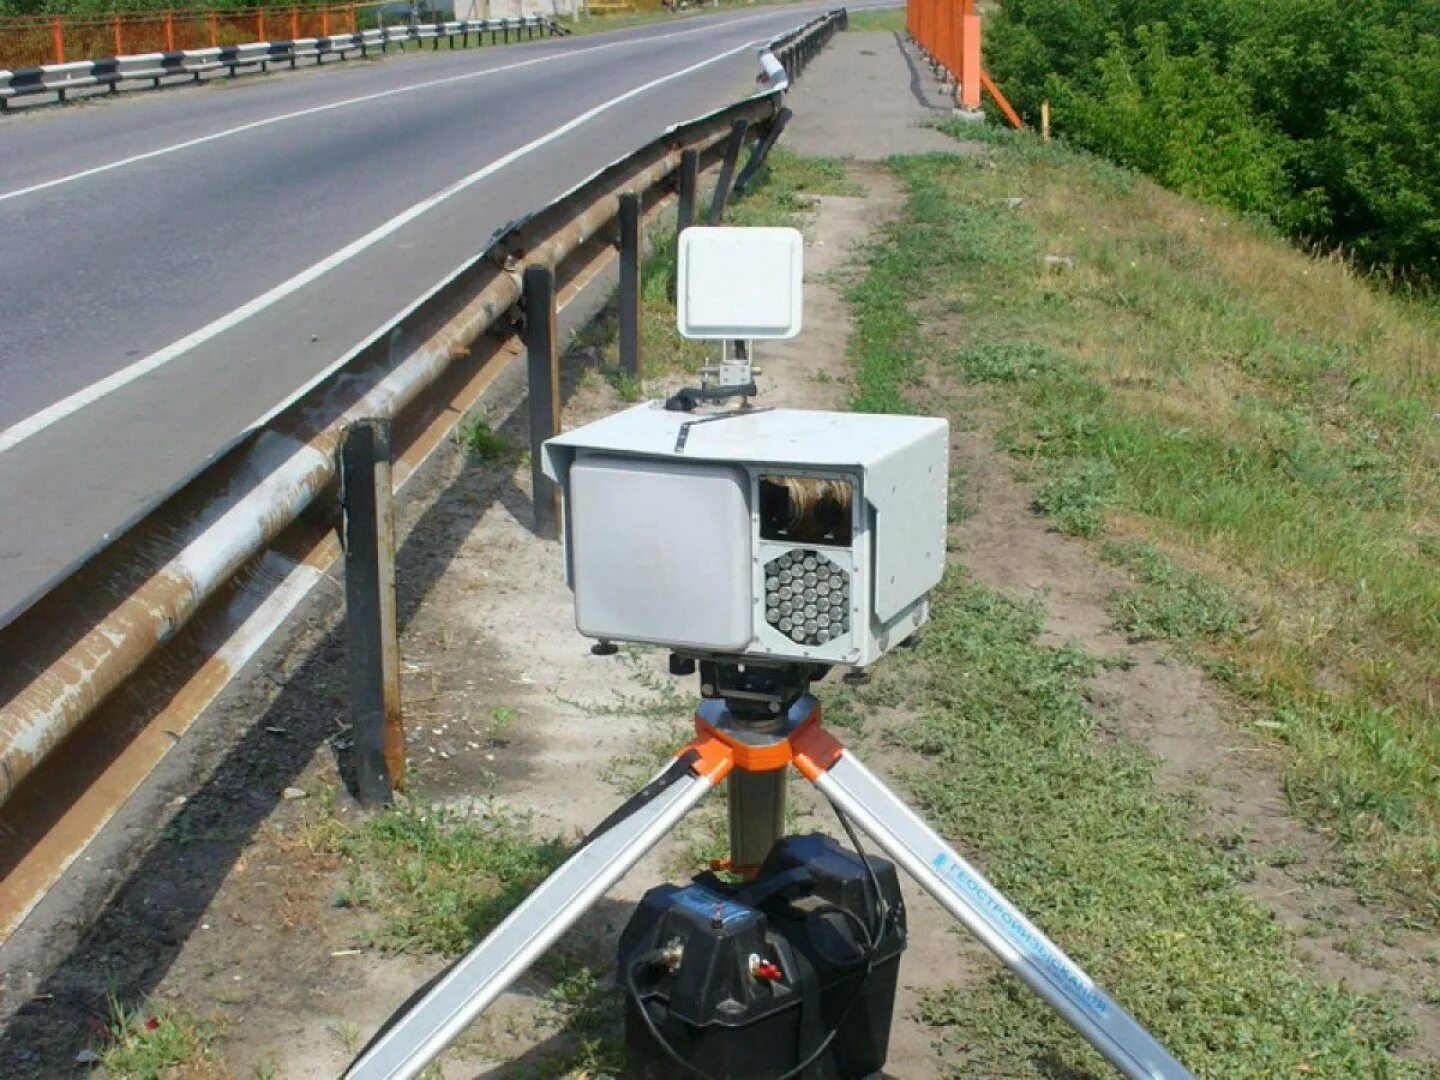 Камеры установленные на дороге